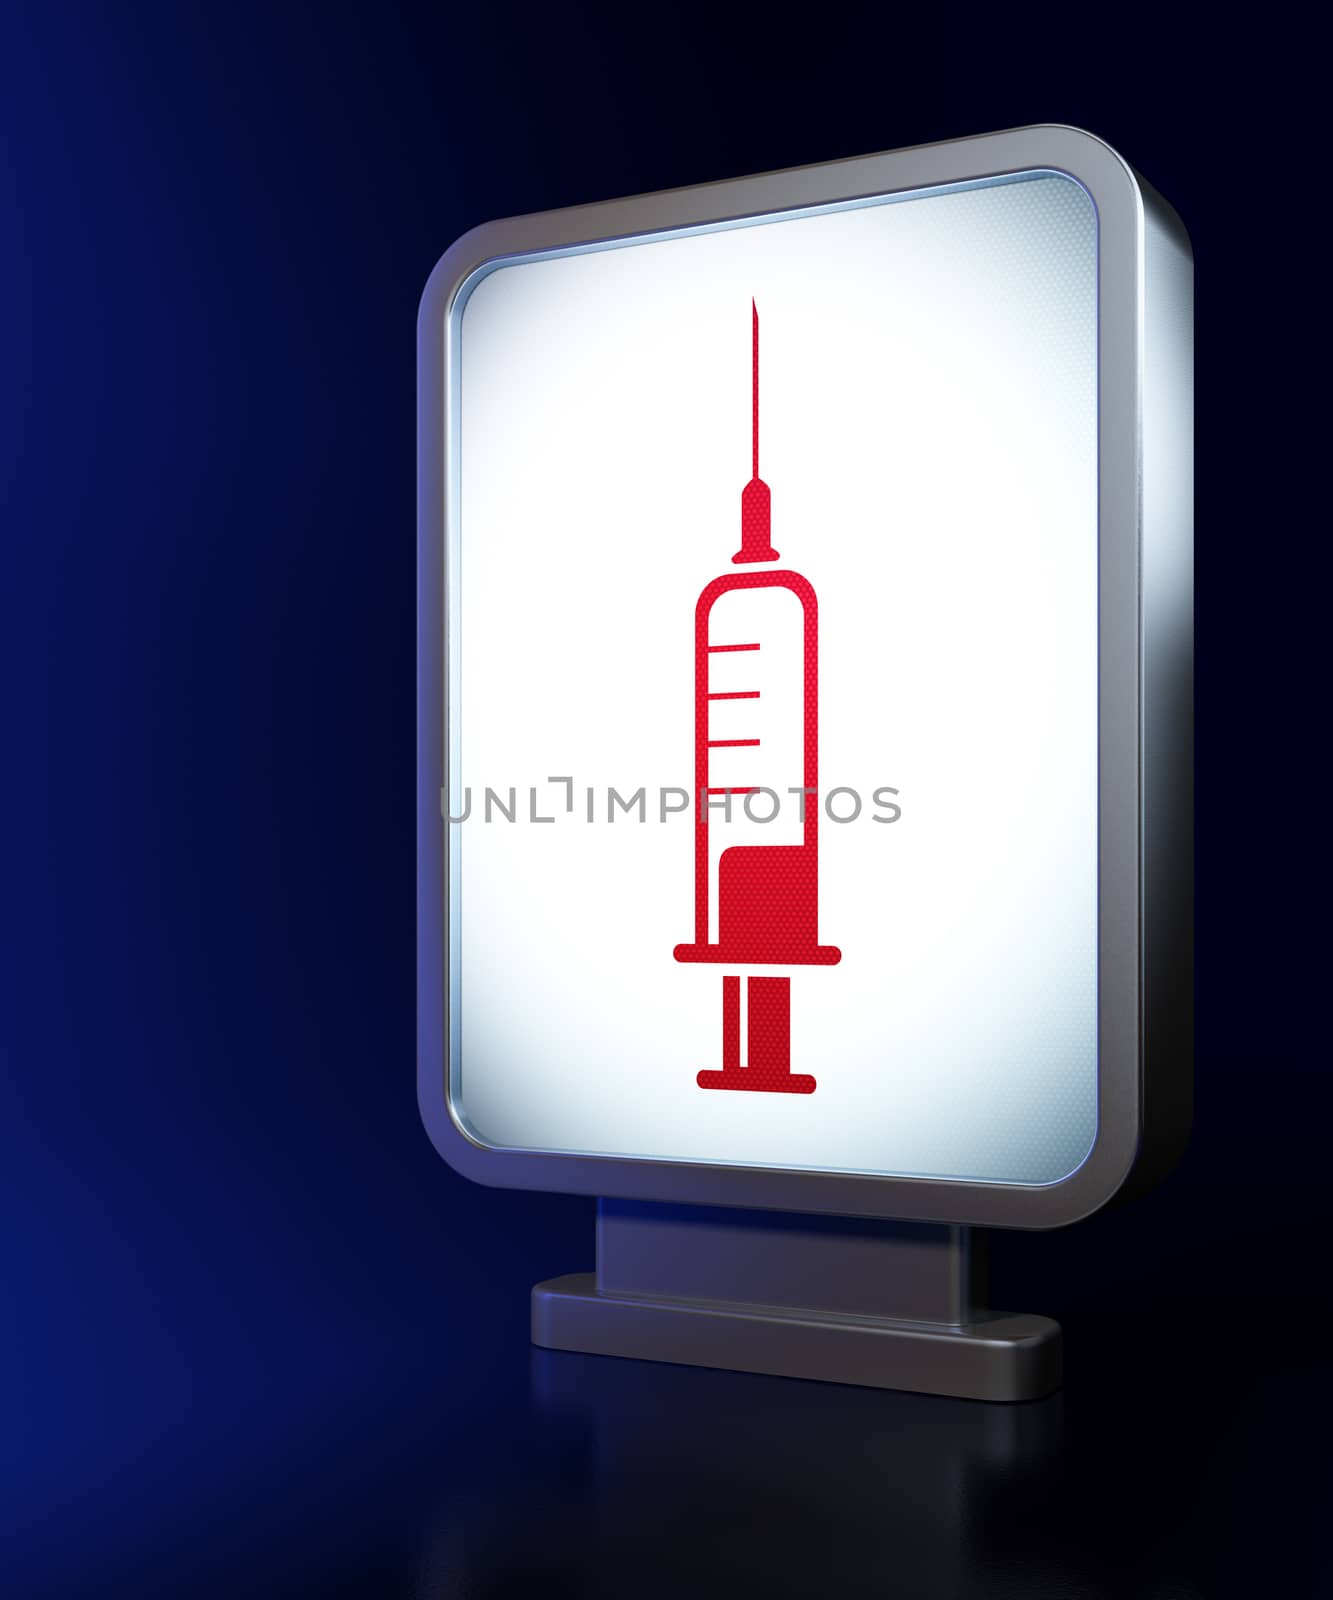 Health concept: Syringe on advertising billboard background, 3d render